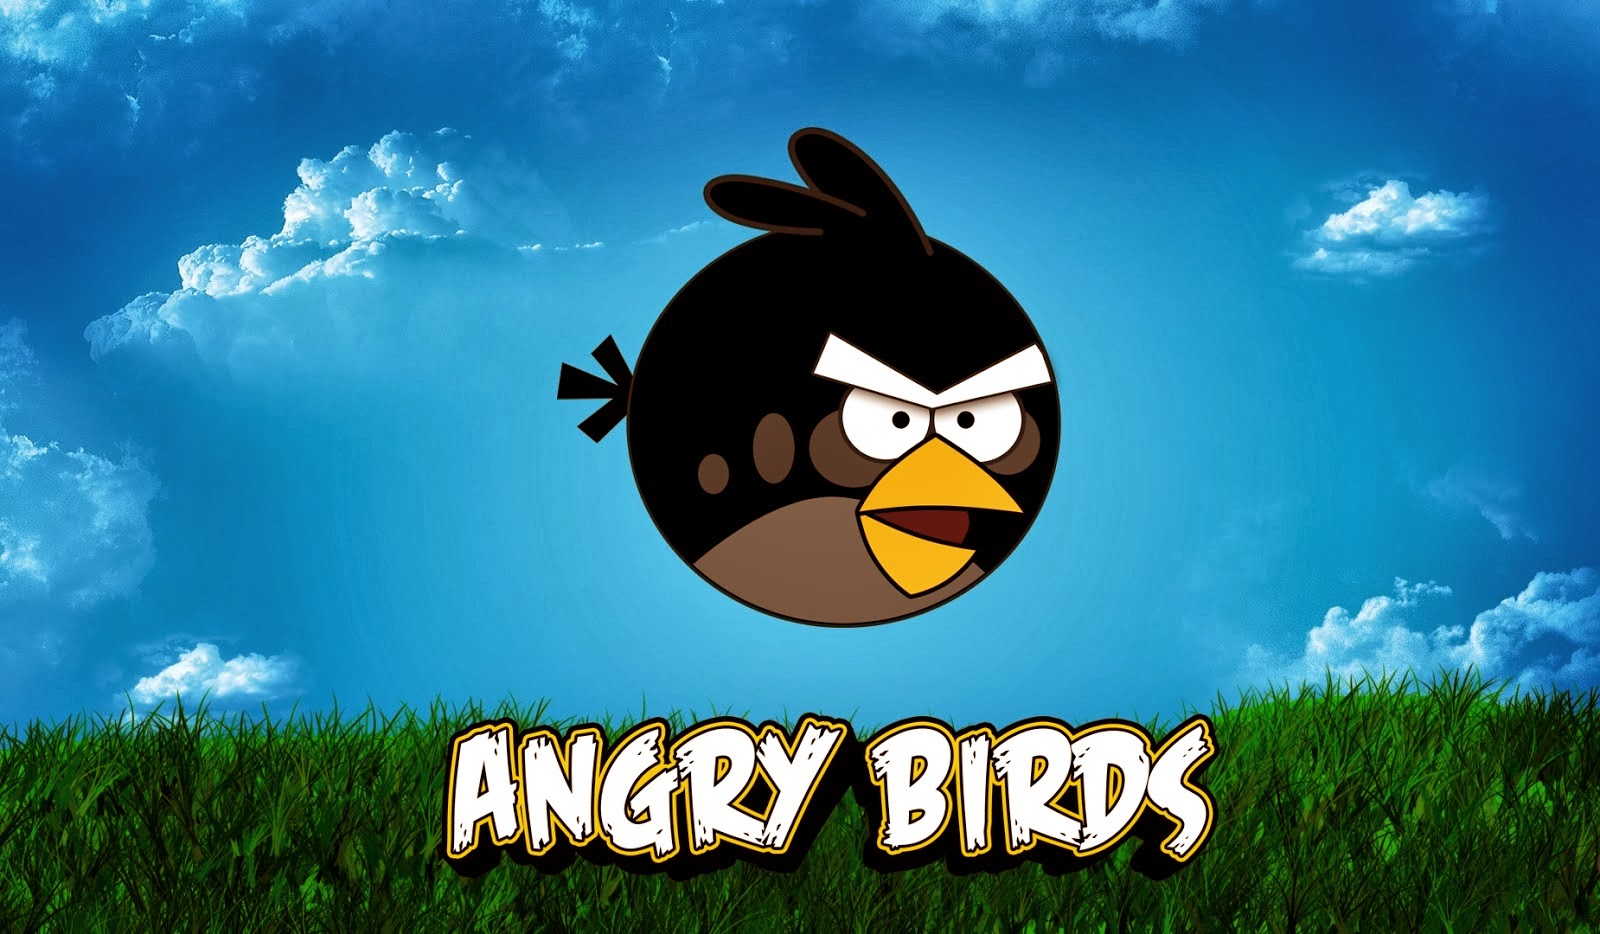 fond d'écran lucu,dessin animé,angry birds,dessin animé,logiciel de jeu vidéo,ciel